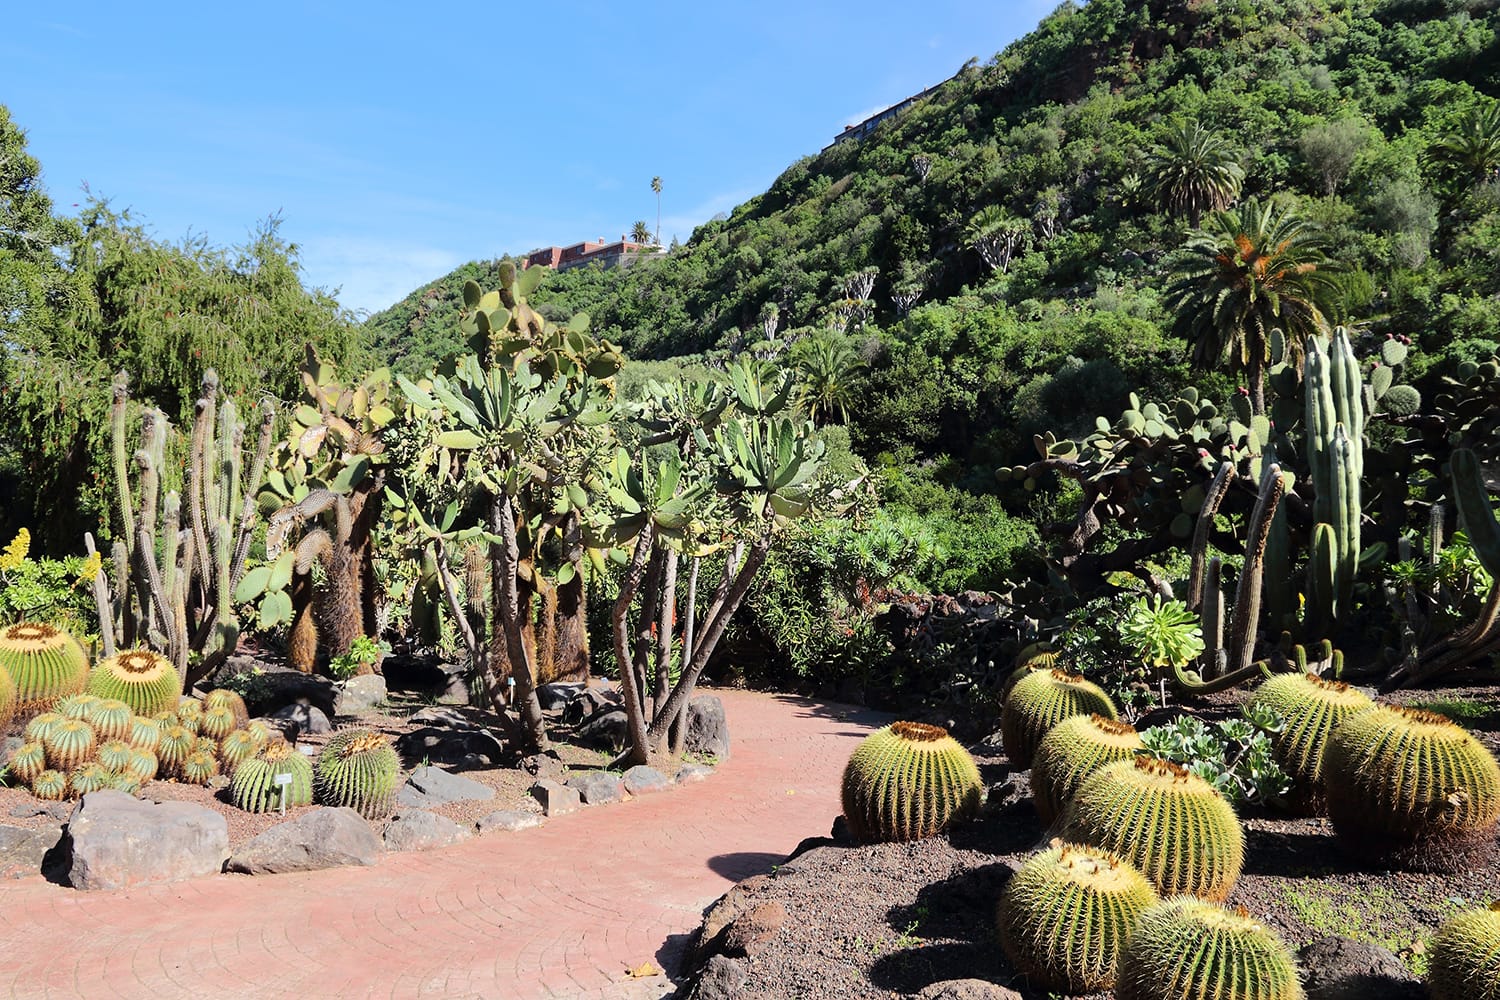 Jardin Canario - botanical garden of Gran Canaria, Spain.